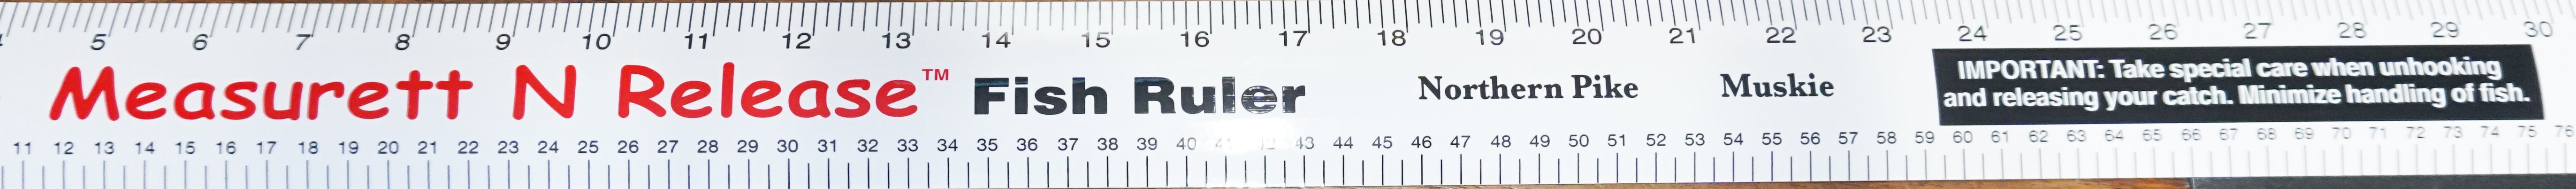 Measurett N'Release Fish Ruler Decal